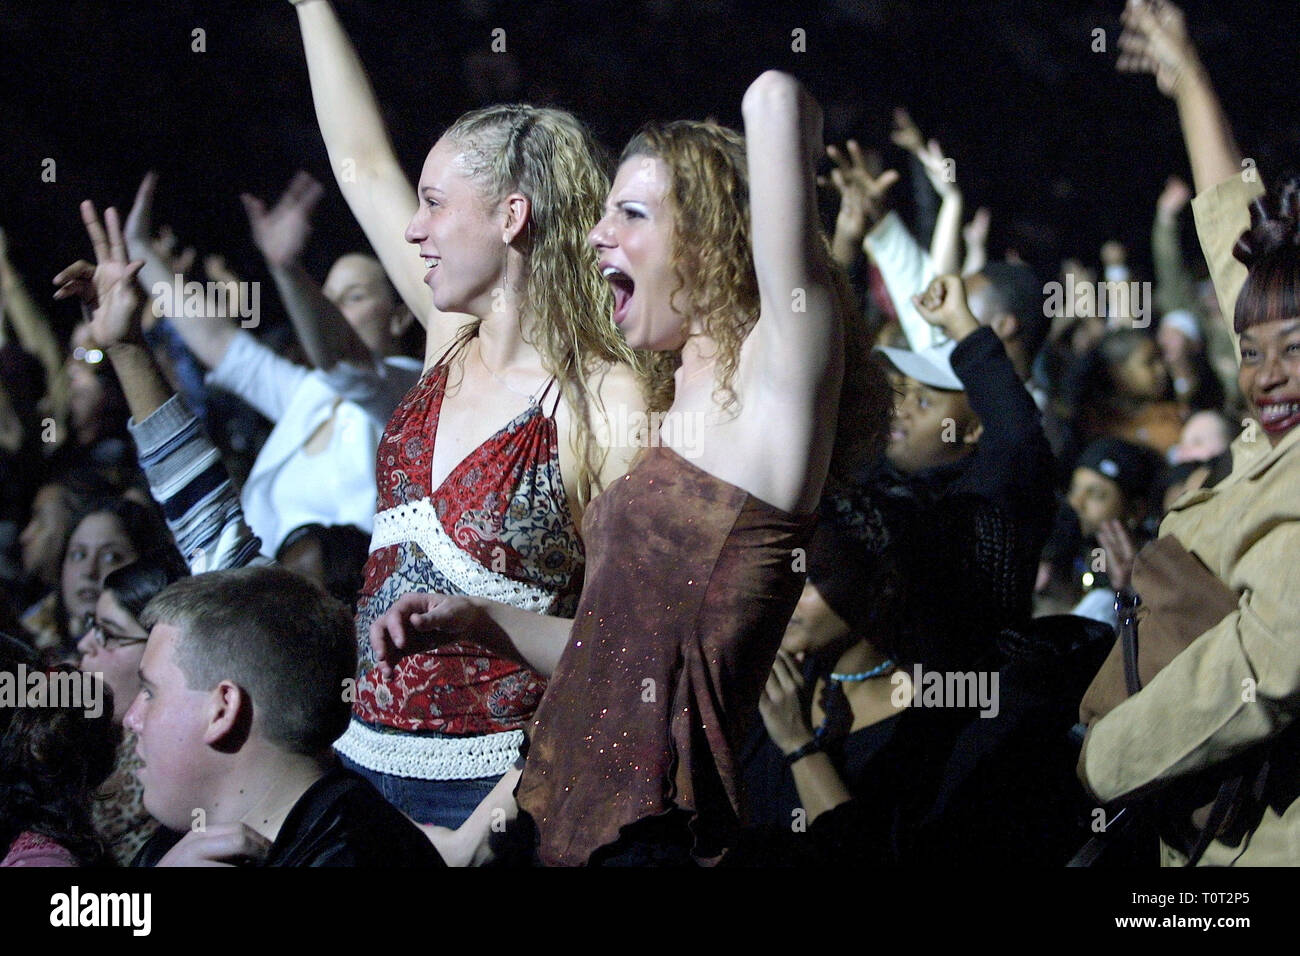 Concierto Fans se muestran aclamando a su banda durante un concierto en "vivo". Foto de stock